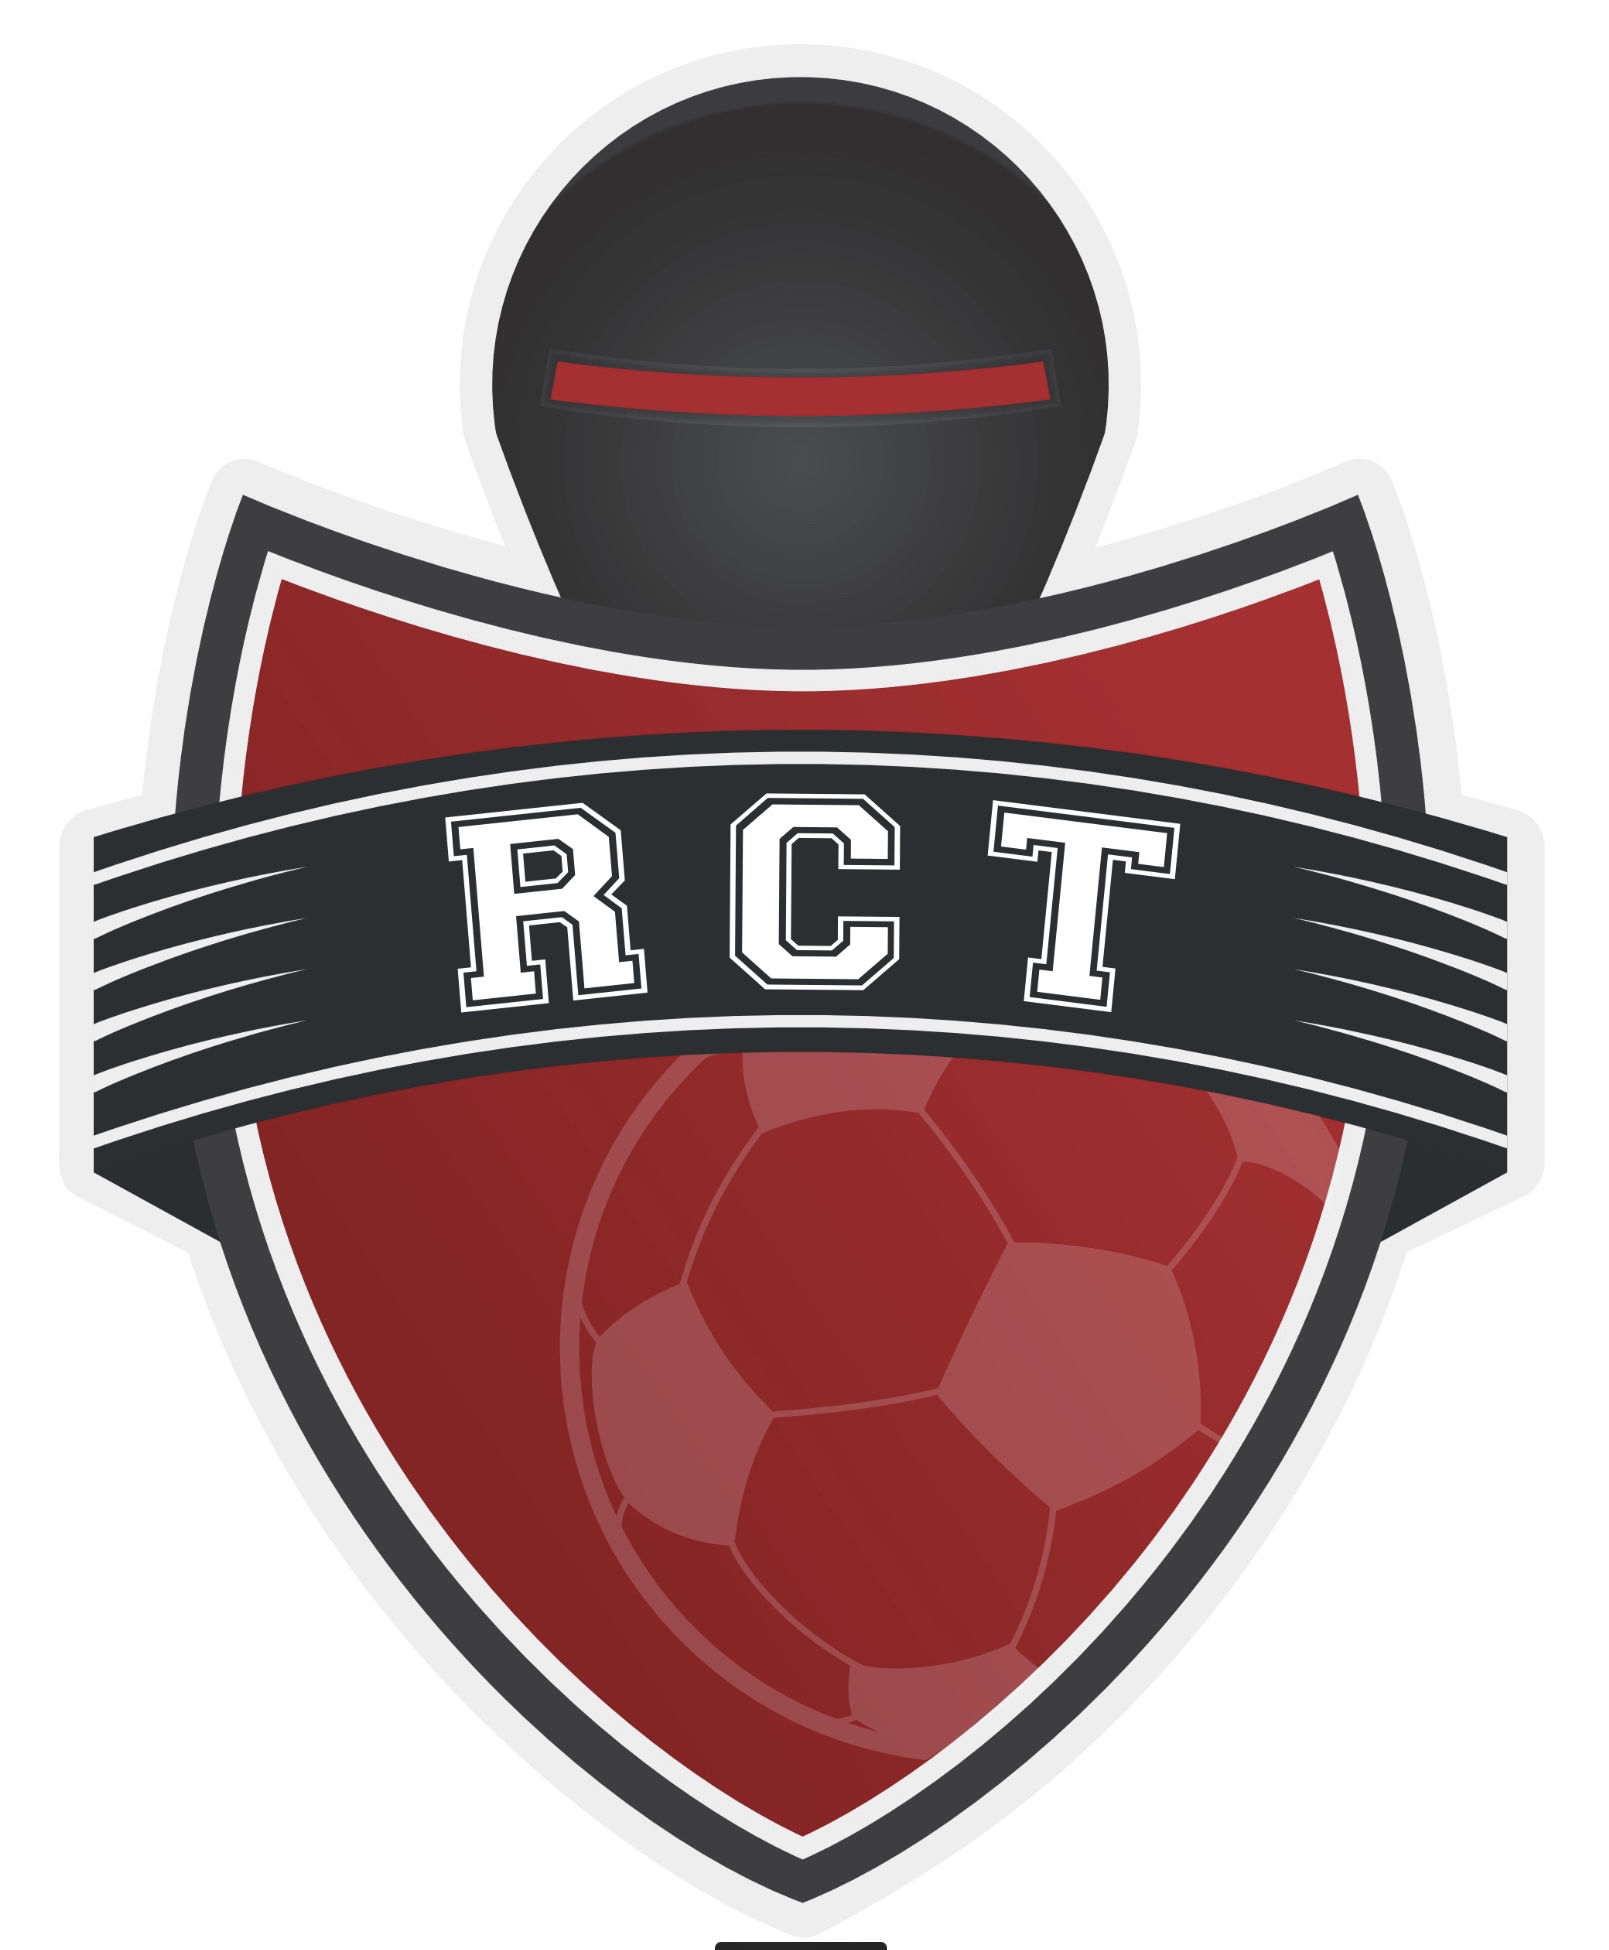 RCT : Robot Club Toulon